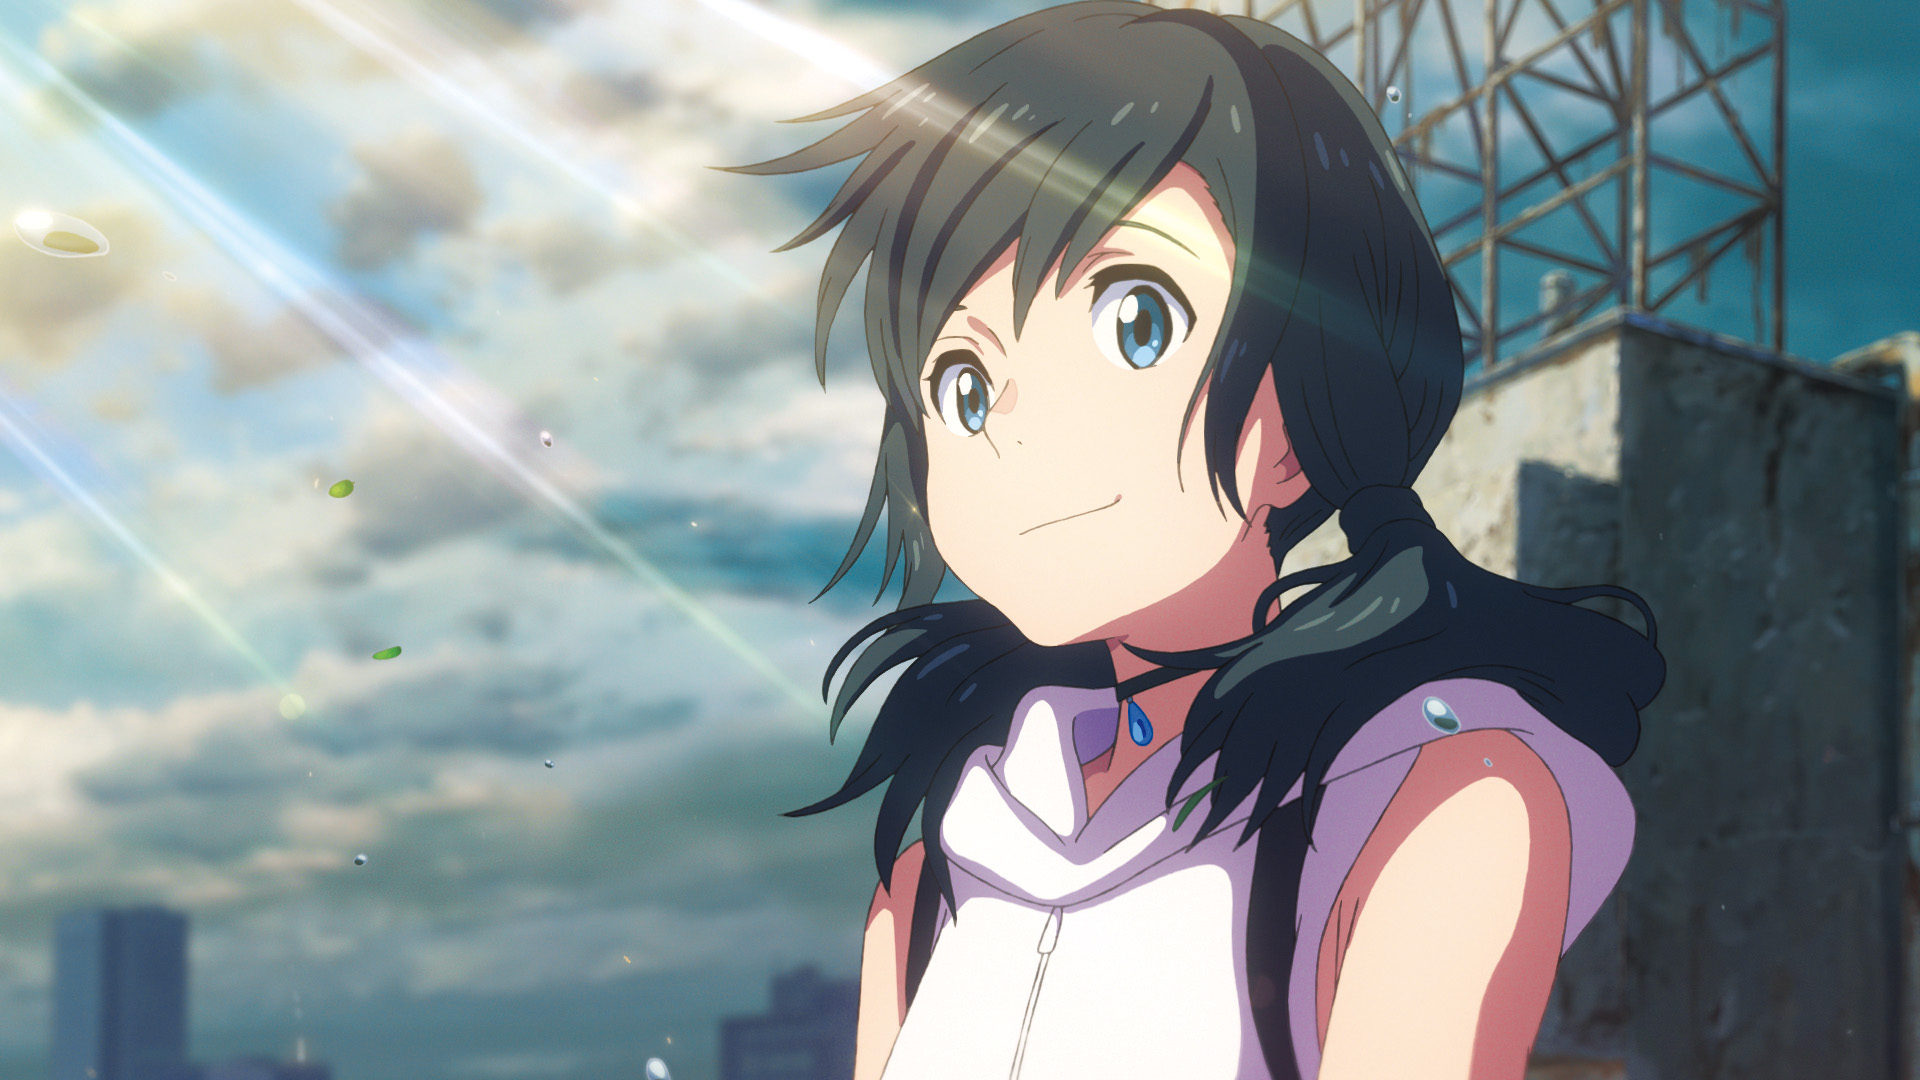 Weathering With You' Director Makoto Shinkai Announces Next Film